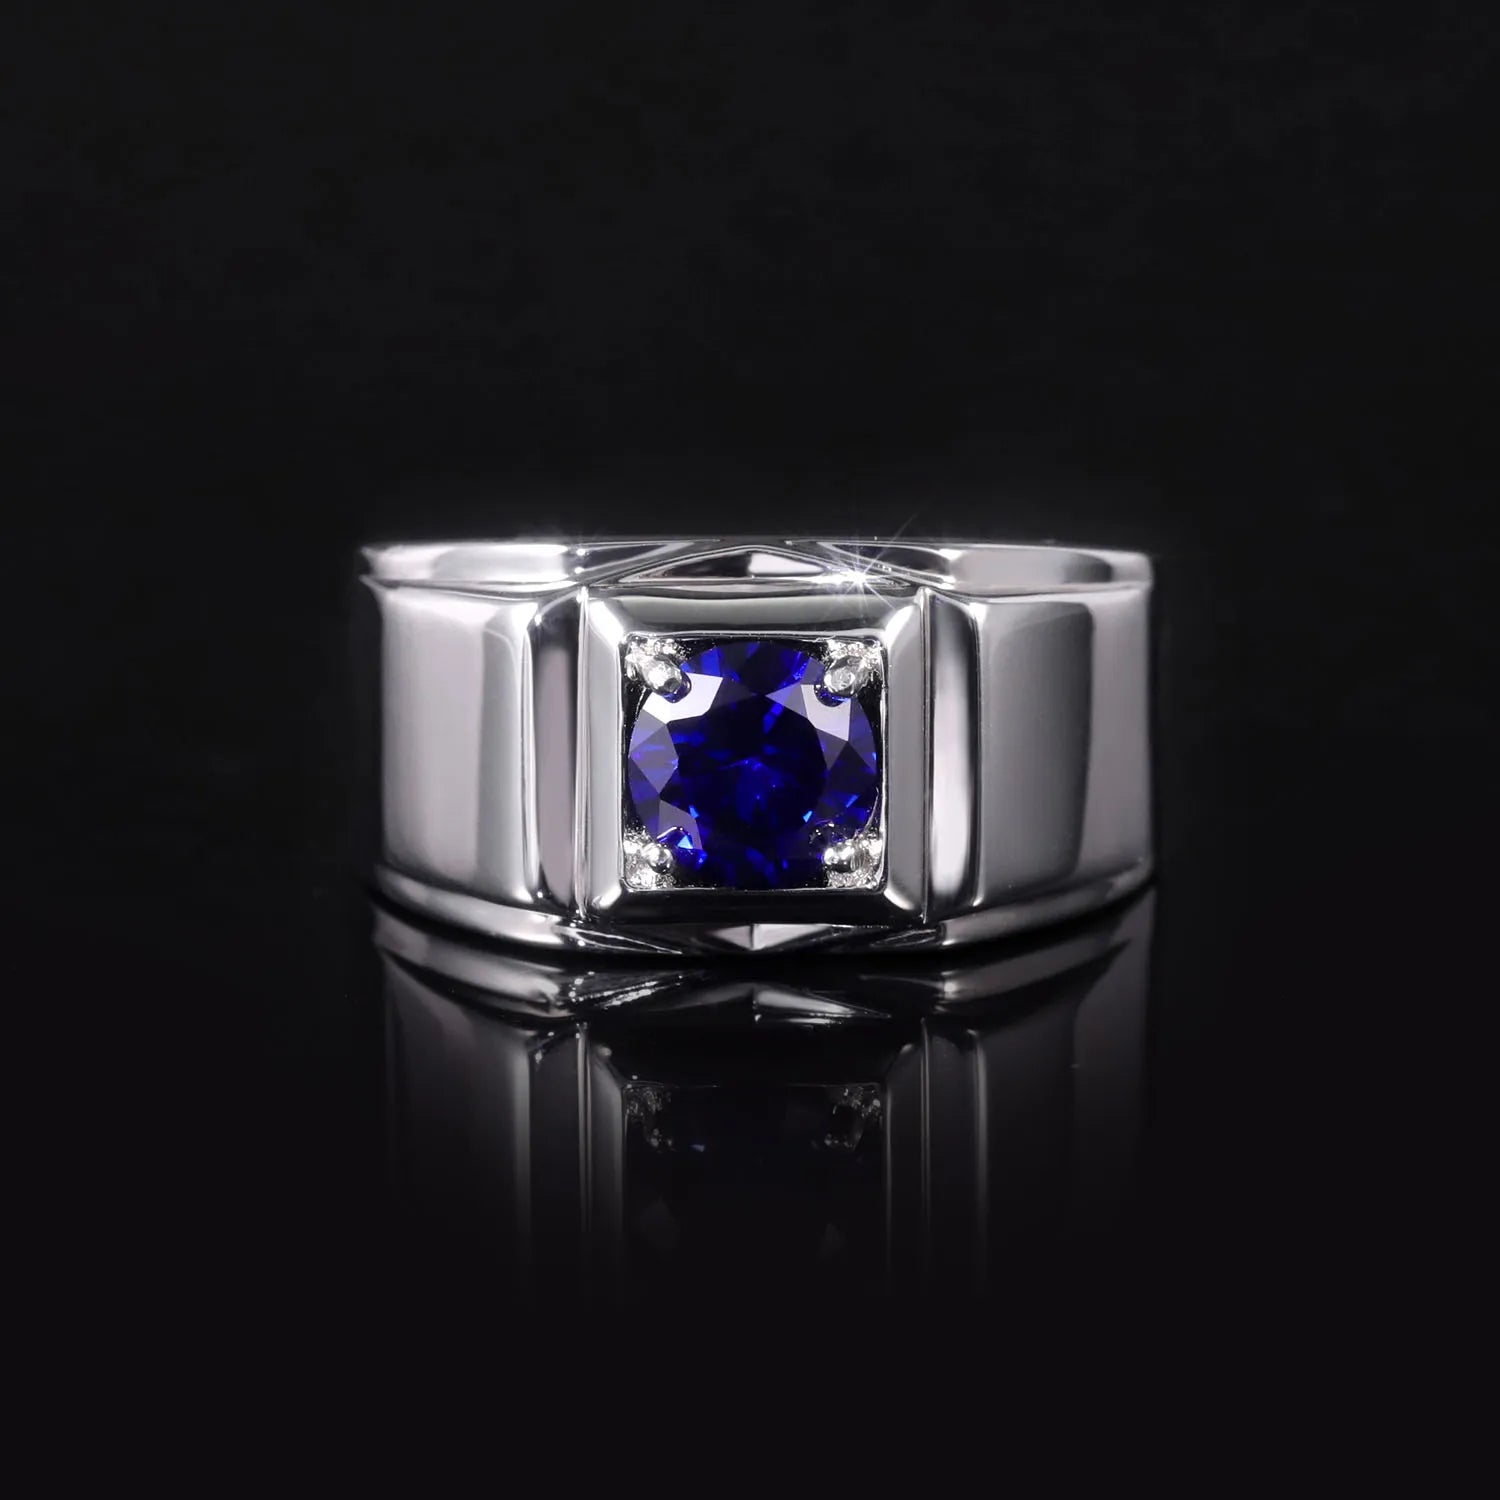 GEM'S BALLET 925 SterlingSilver Men's Engagement Rings 6.5mm Round Lab Grown Sapphire September Birthstone Gift For Him